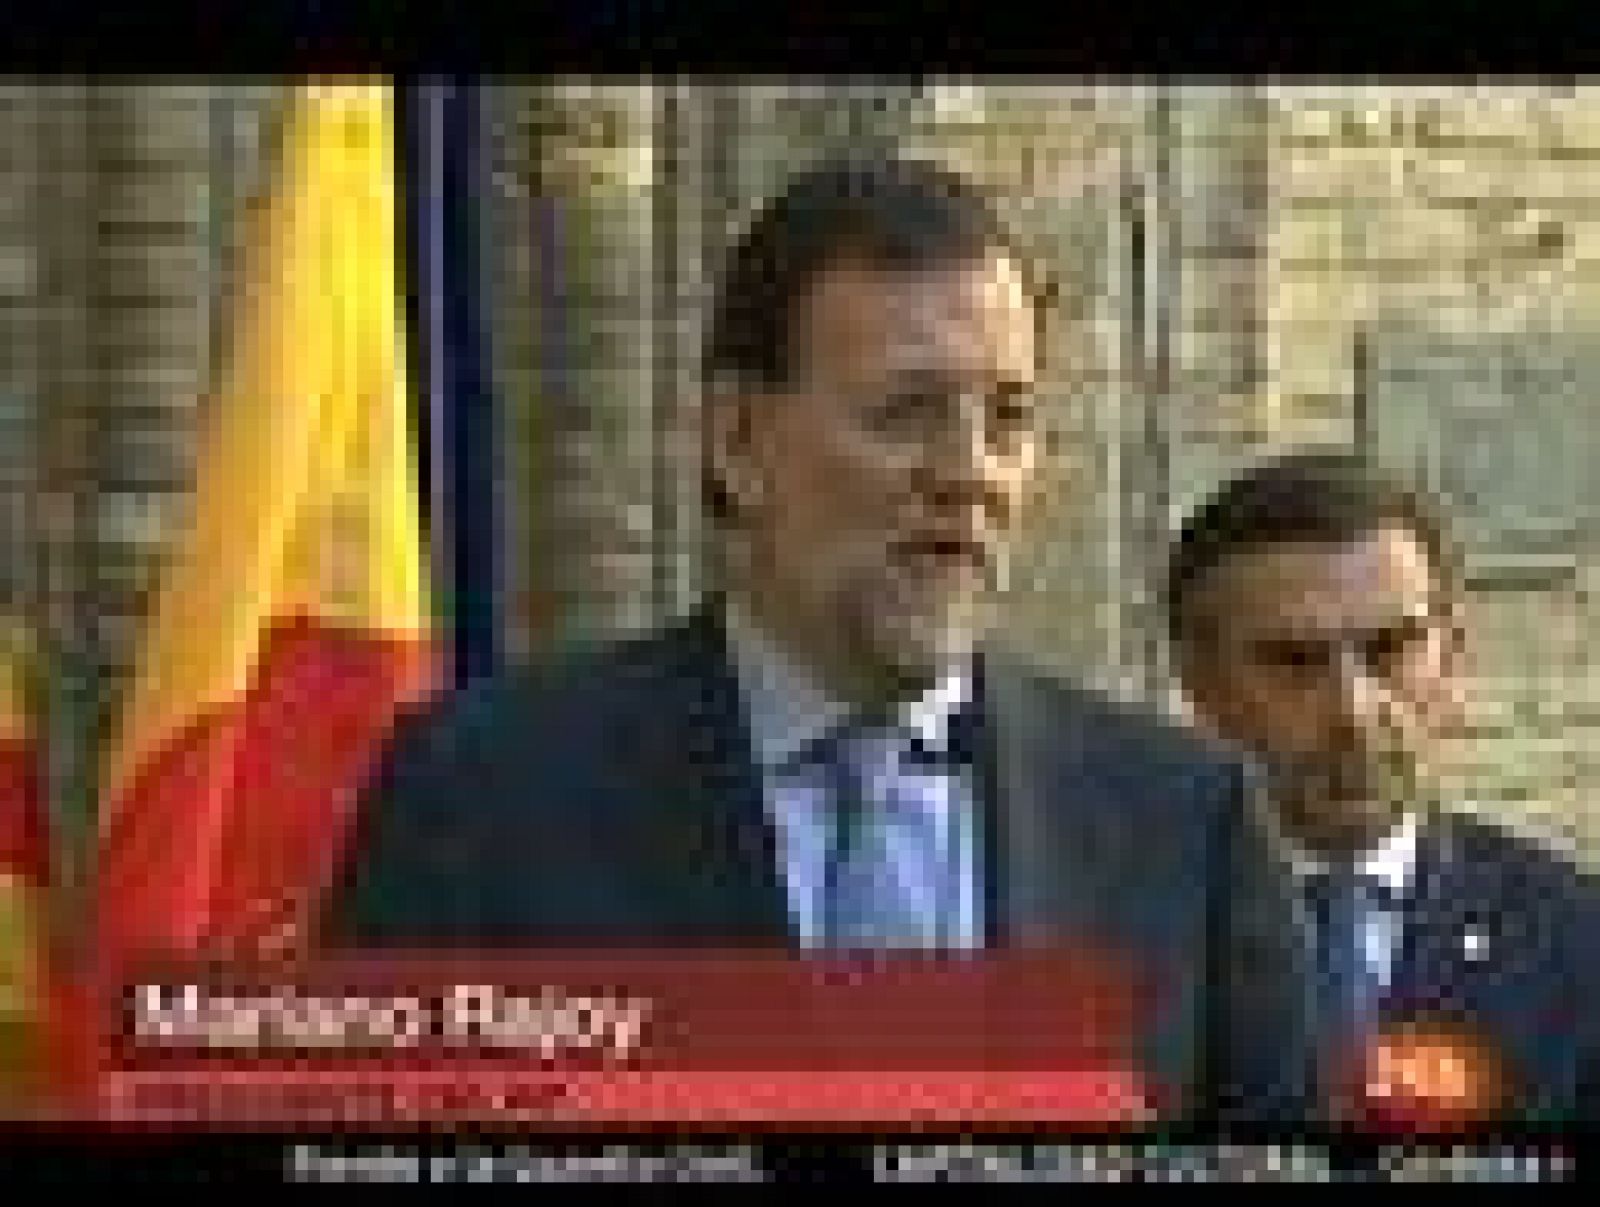 El presidente del PP, Mariano Rajoy, ha manifestado que el Gobierno debe "dar explicaciones y decir la verdad" sobre el Caso Faisán, tras la decisión del juez que instruye el caso de imputar al exdirector general de la Policía y a otros altos cargos del Ministerio del Interior.

